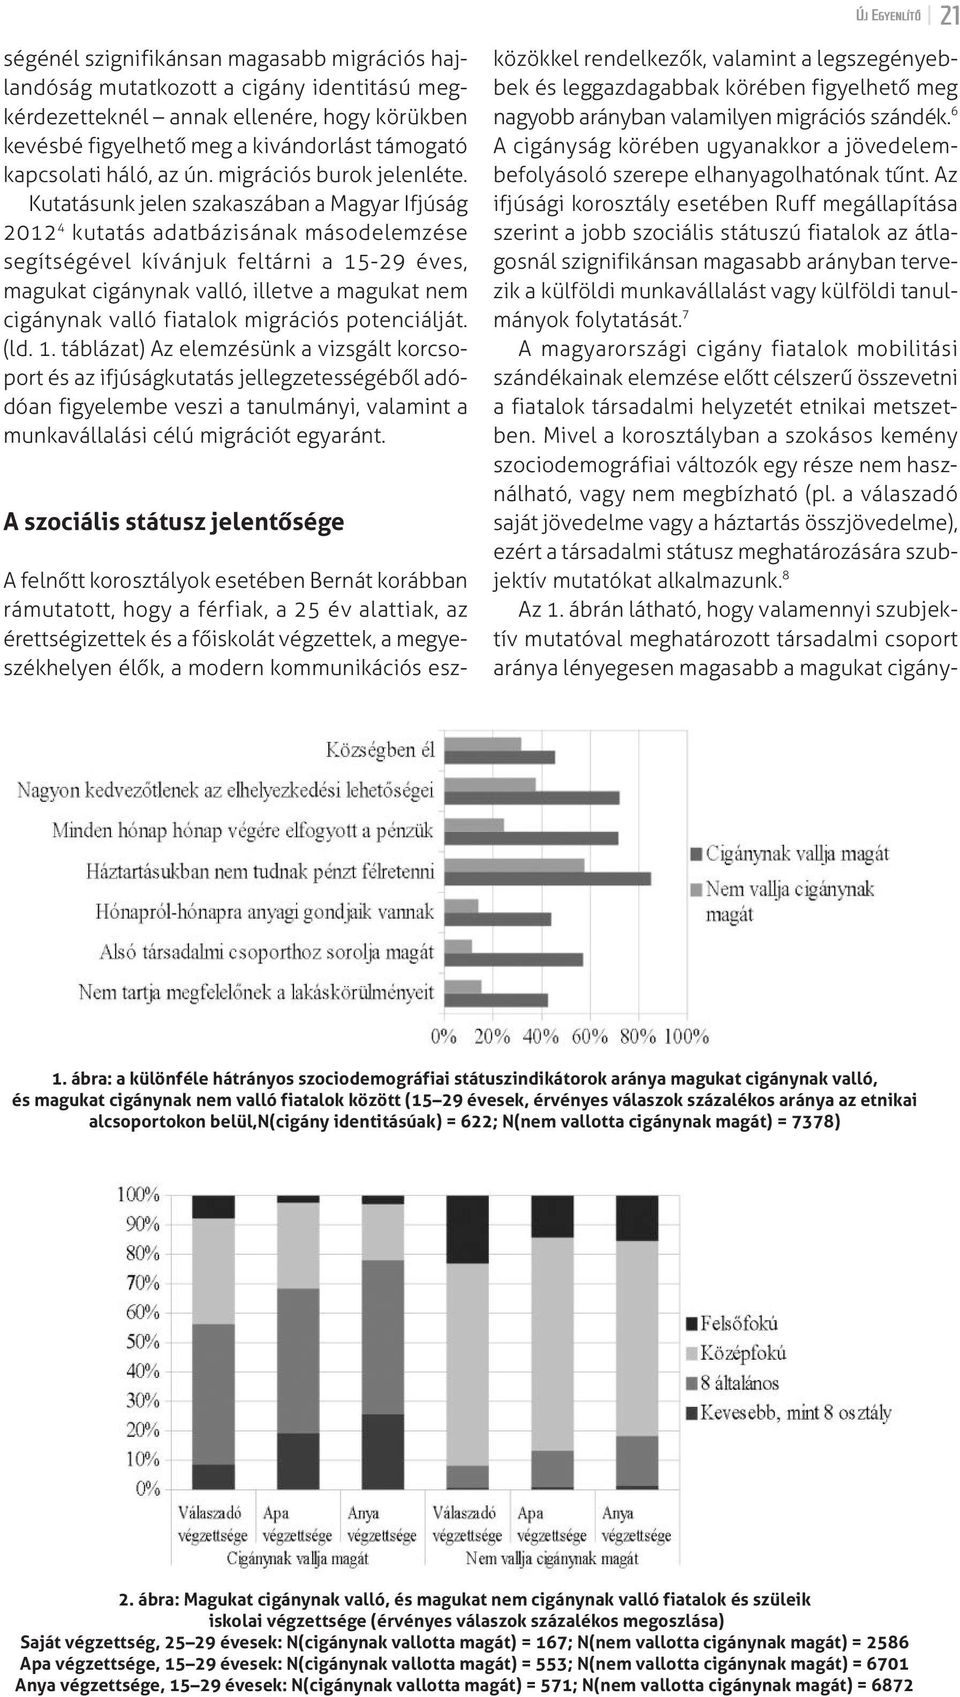 kutatásunk jelen szakaszában a magyar ifjúság 2012 4 kutatás adatbázisának másodelemzése segítségével kívánjuk feltárni a 15-29 éves, magukat cigánynak valló, illetve a magukat nem cigánynak valló